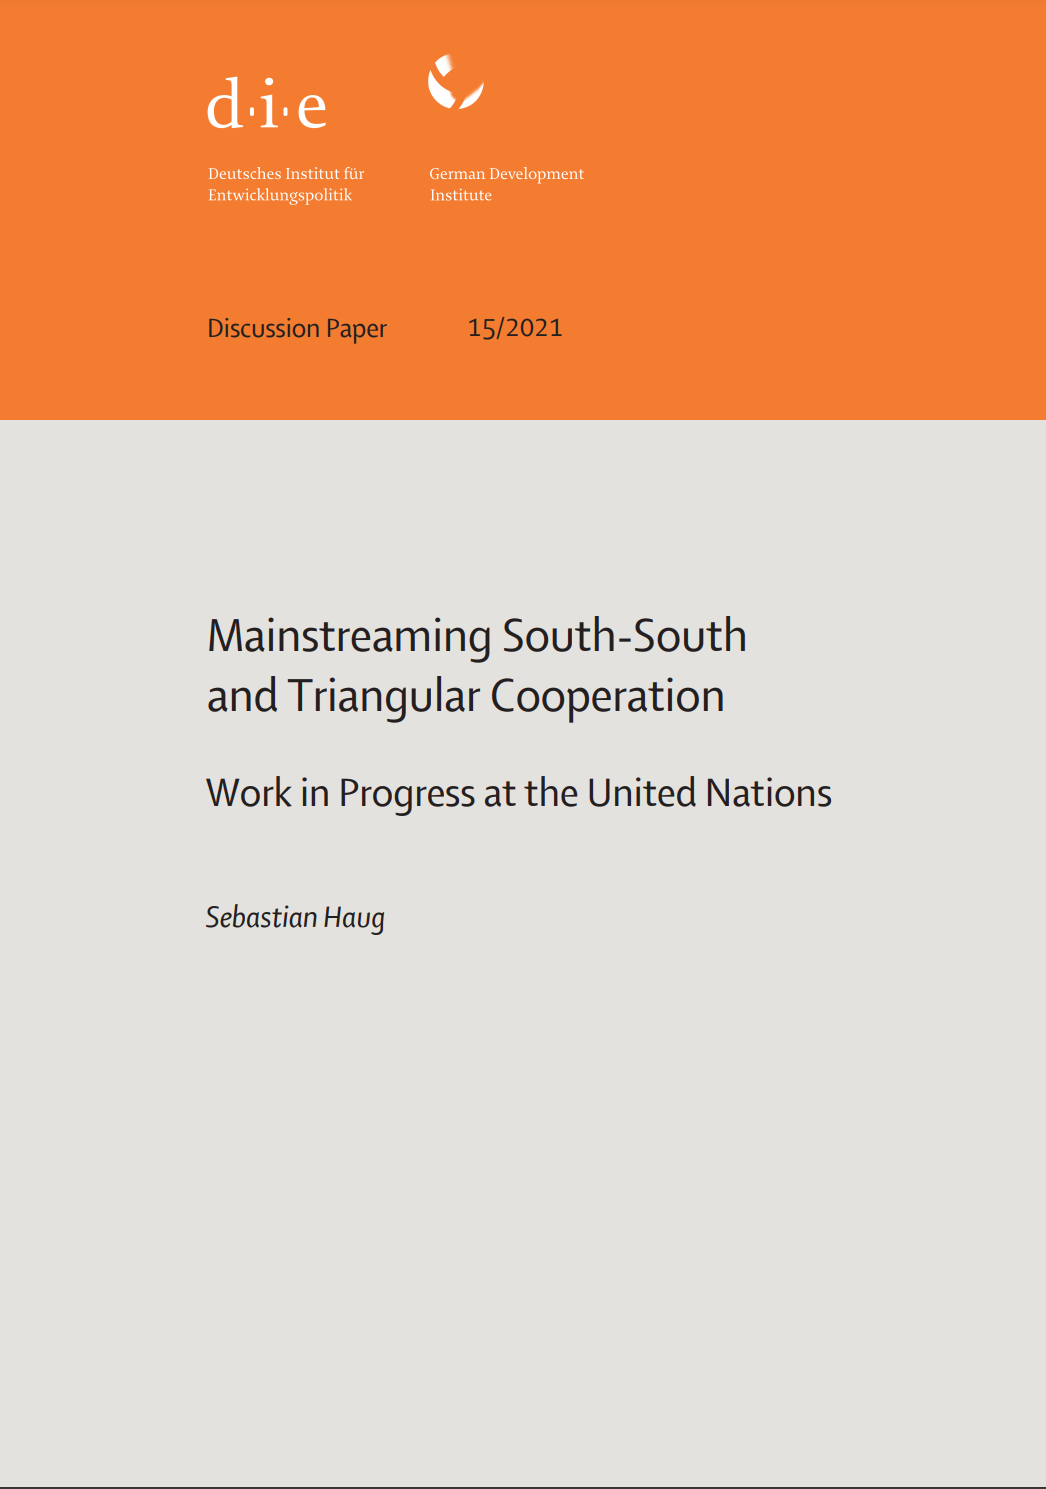 Integración de la Cooperación Sur-Sur y Triangular en el trabajo de las Naciones Unidas